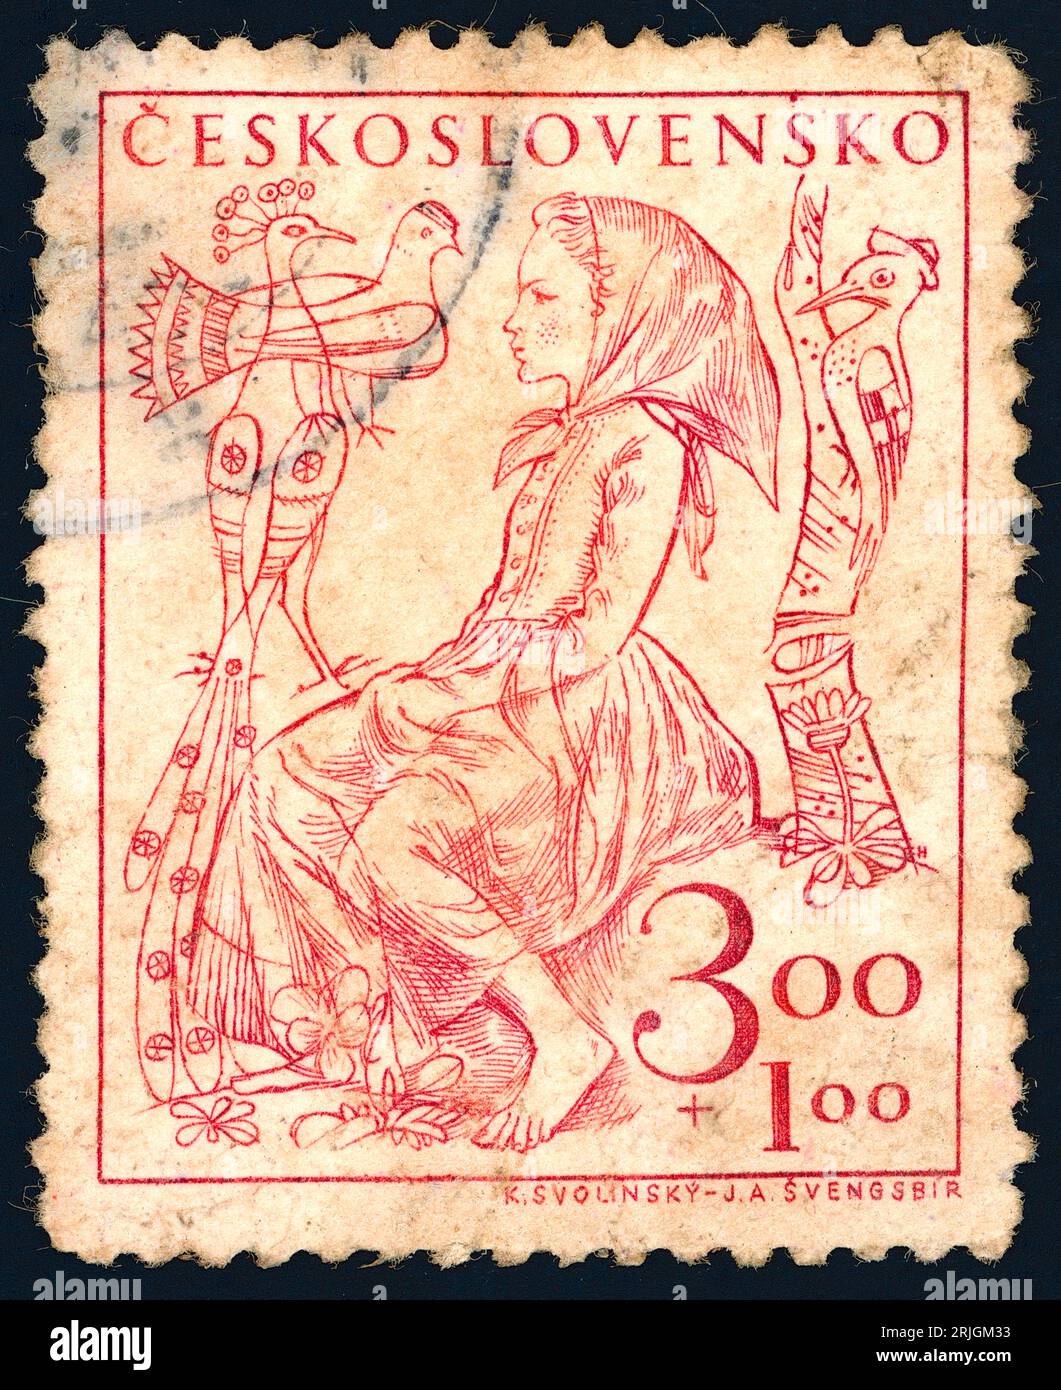 Un gril avec des oiseaux – timbre d’une série de timbres consacrée aux enfants. Timbre-poste émis en Tchécoslovaquie en 1948. Banque D'Images